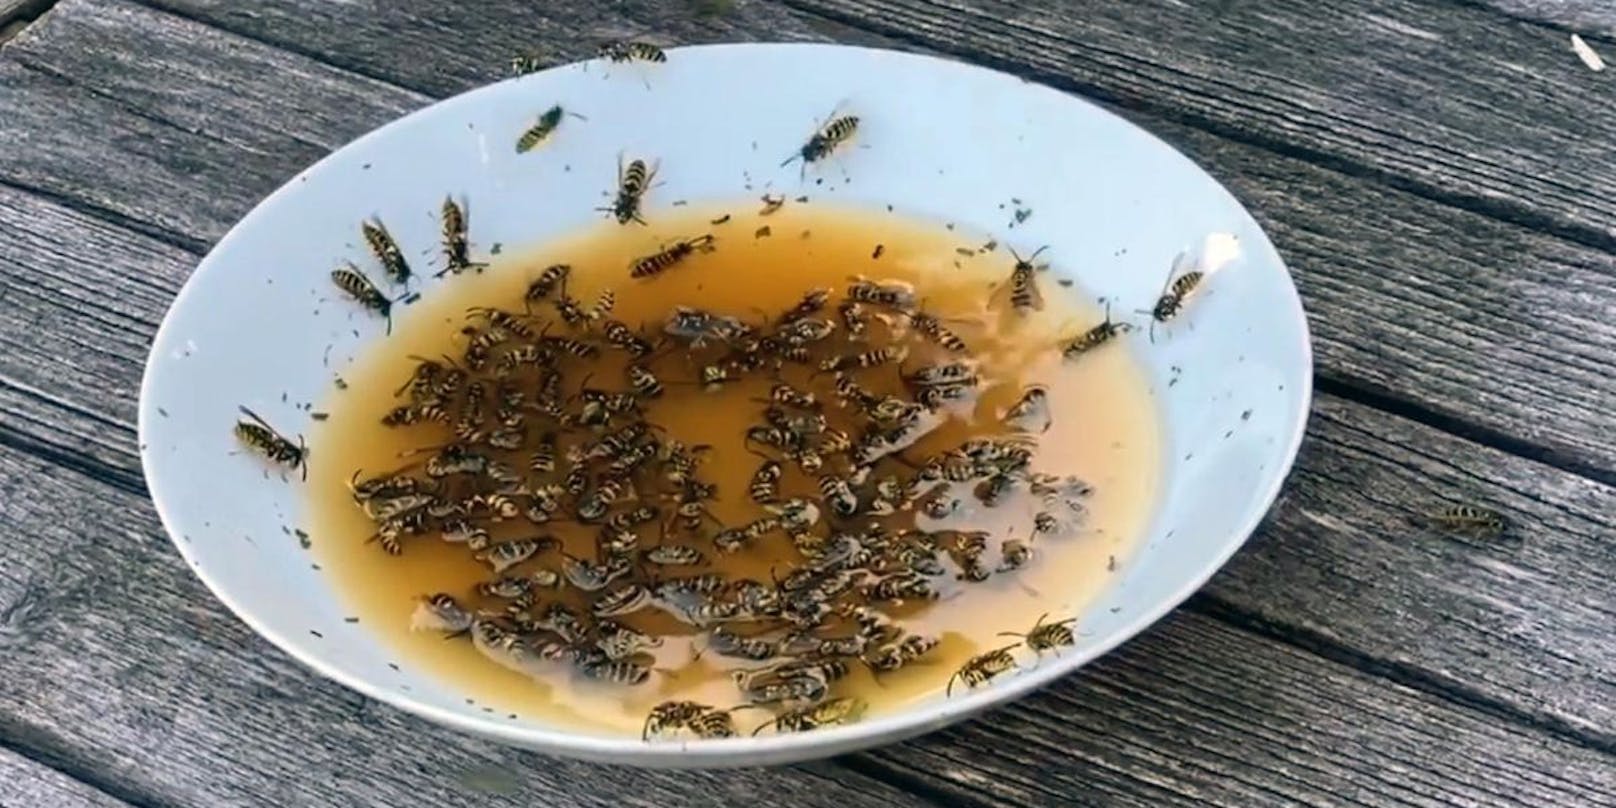 Mit einer Mixtur aus Süßmost, Zucker und Rindsuppe schaffte es Dominik Landwehr, massenhaft Wespen anzulocken.